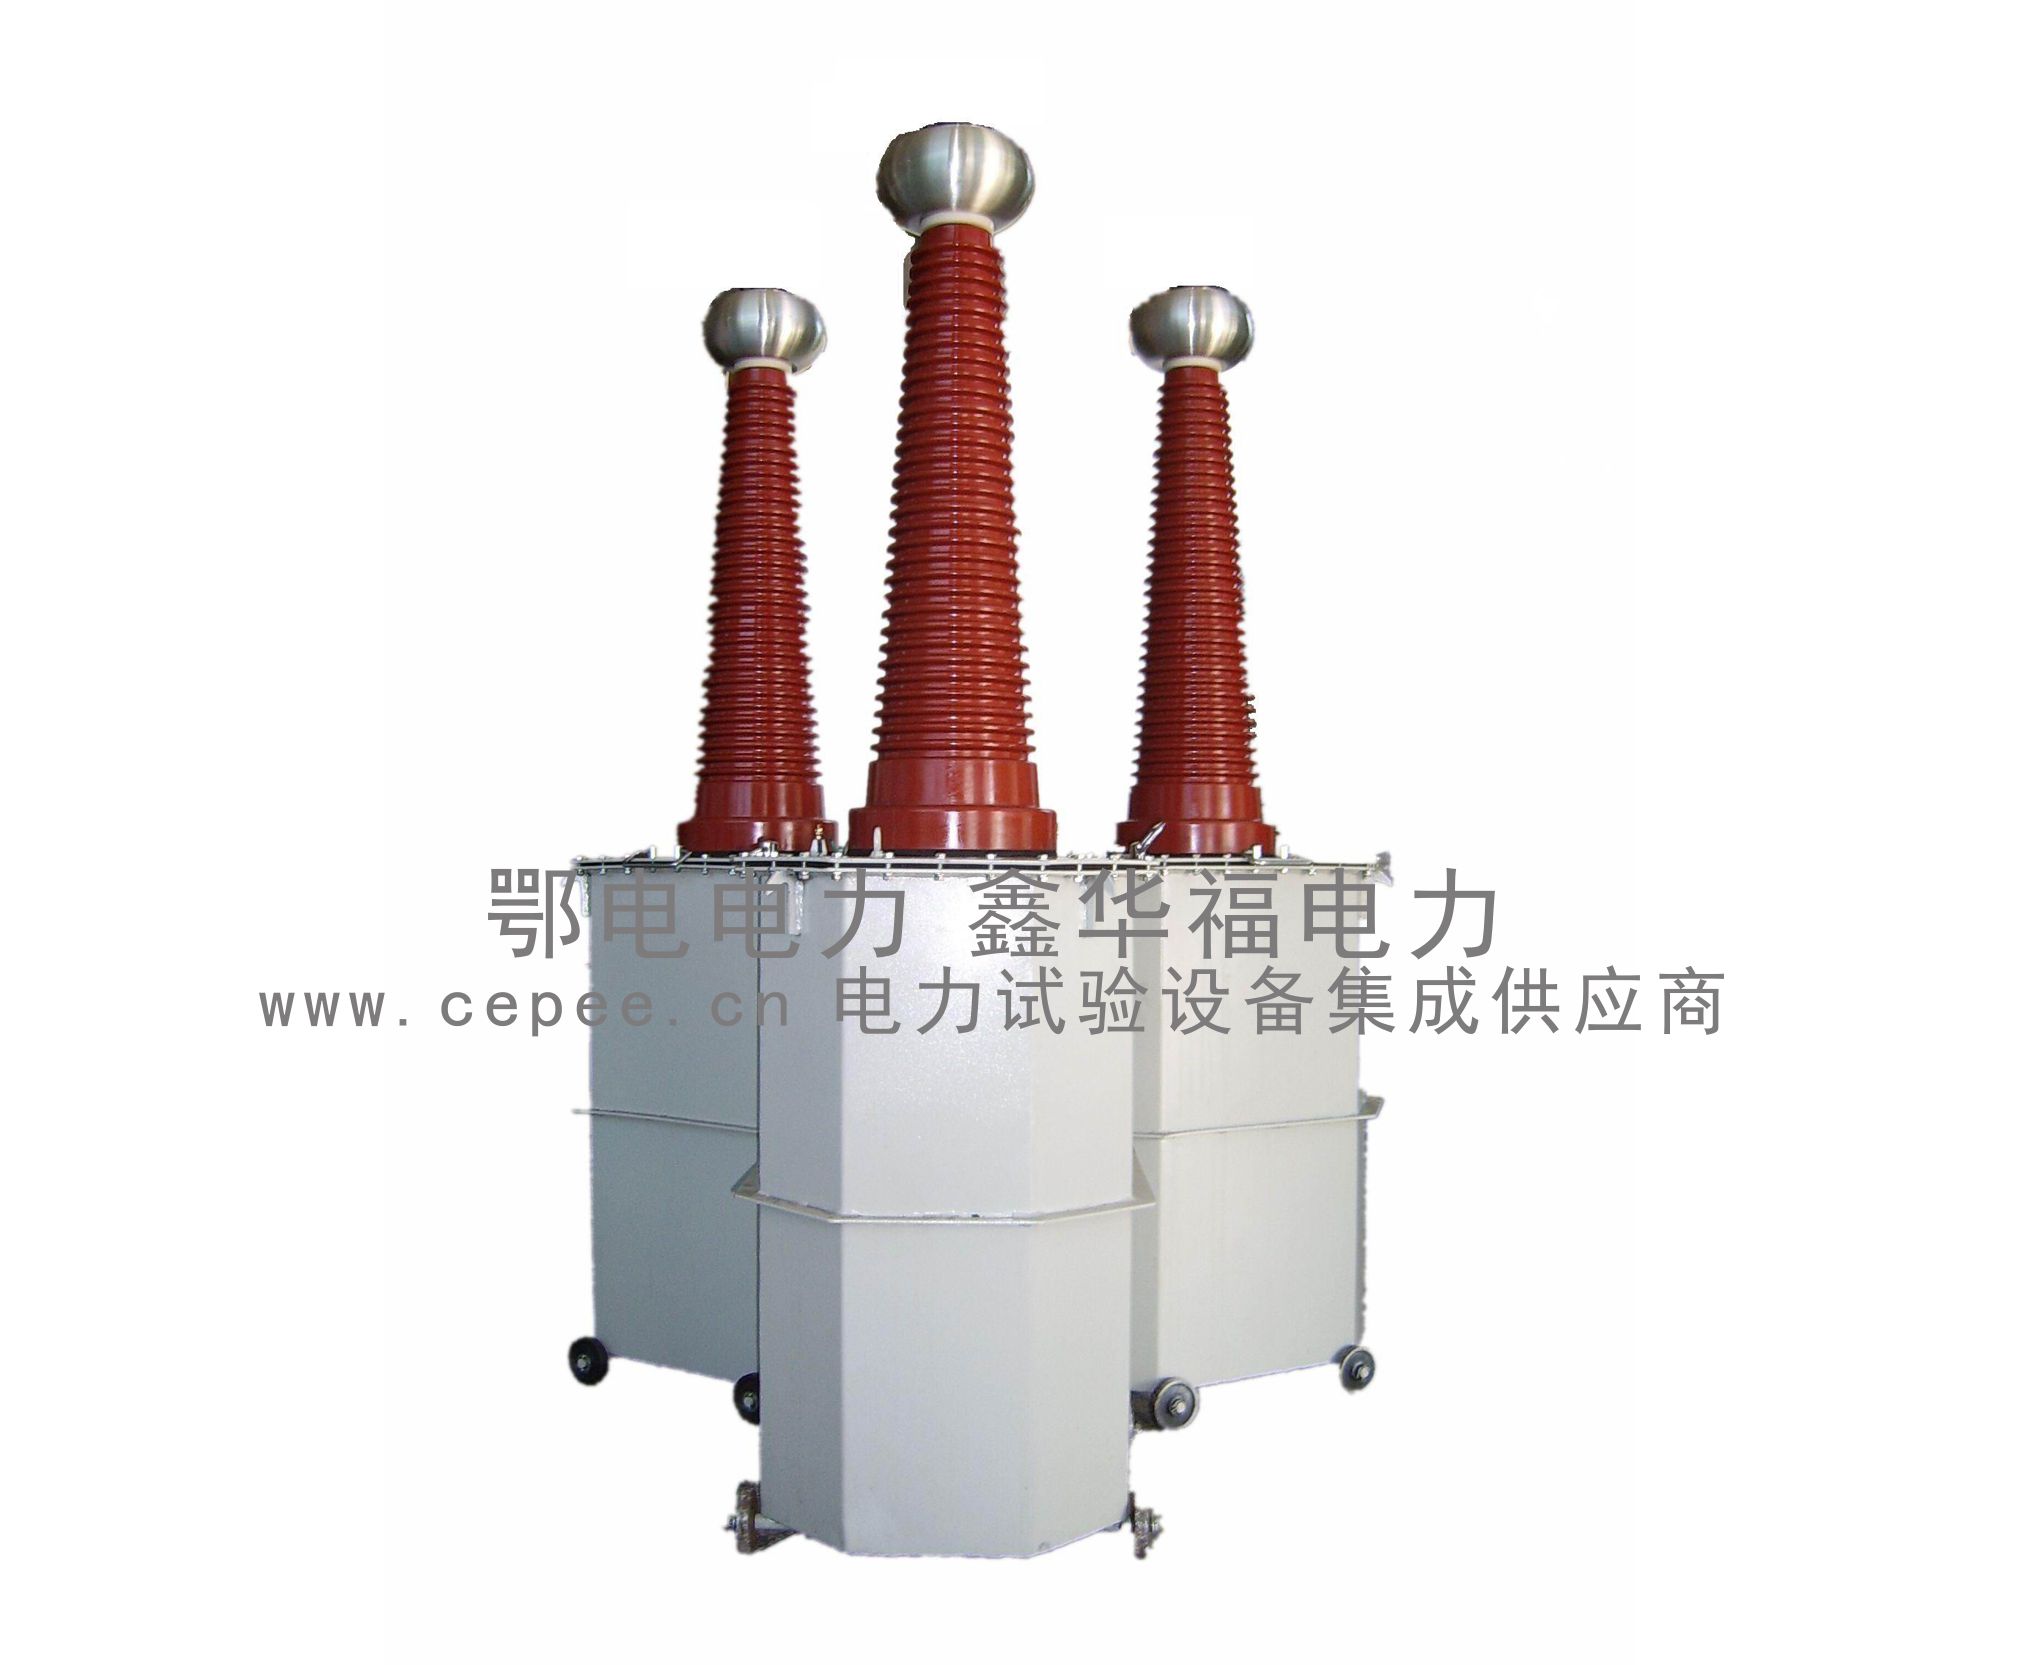 GYC-10/100干式高压试验变压器-武汉鄂电电力试验设备有限公司